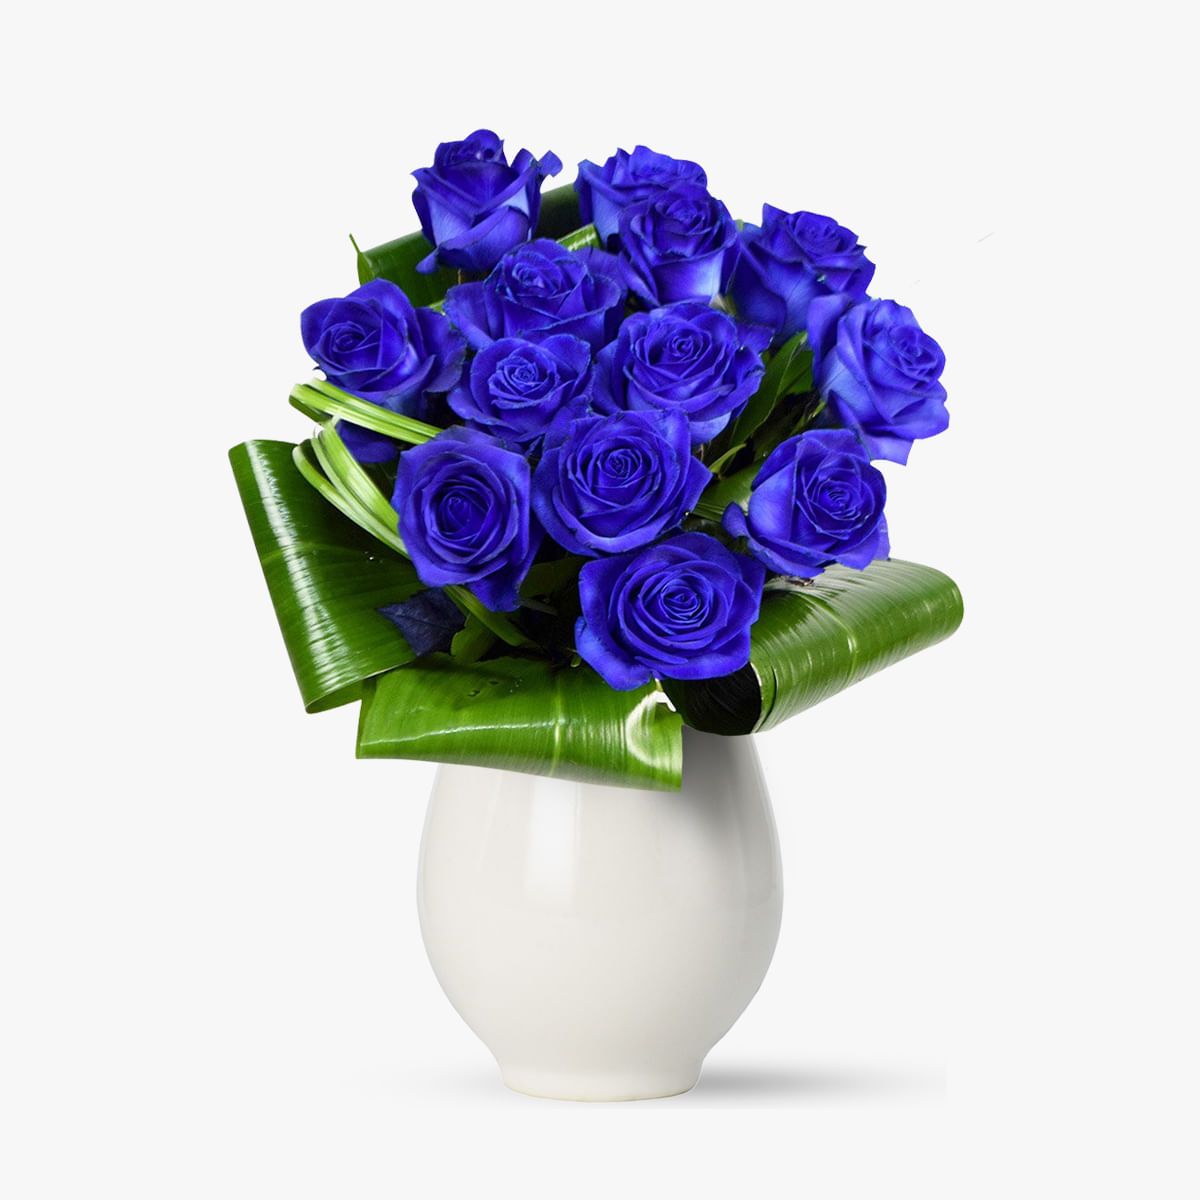 Buchet de 13 trandafiri albastri – Standard albastri imagine 2022